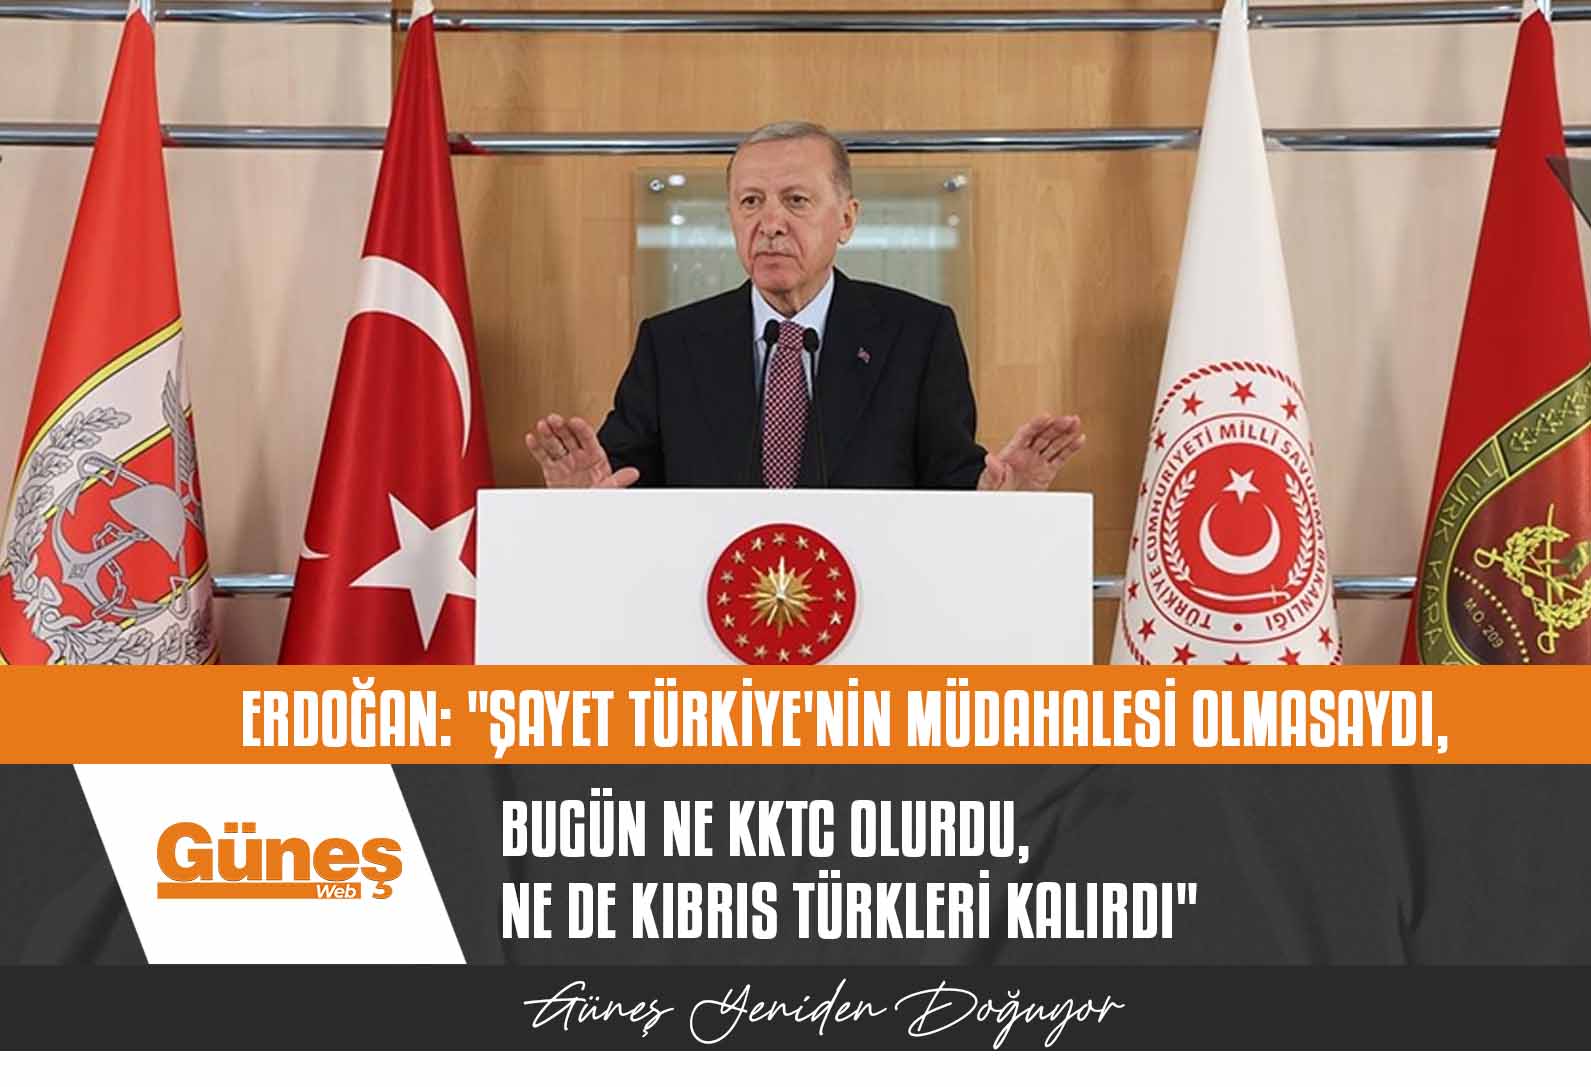 Erdoğan: “Şayet Türkiye’nin müdahalesi olmasaydı, bugün ne KKTC olurdu, ne de Kıbrıs Türkleri kalırdı”